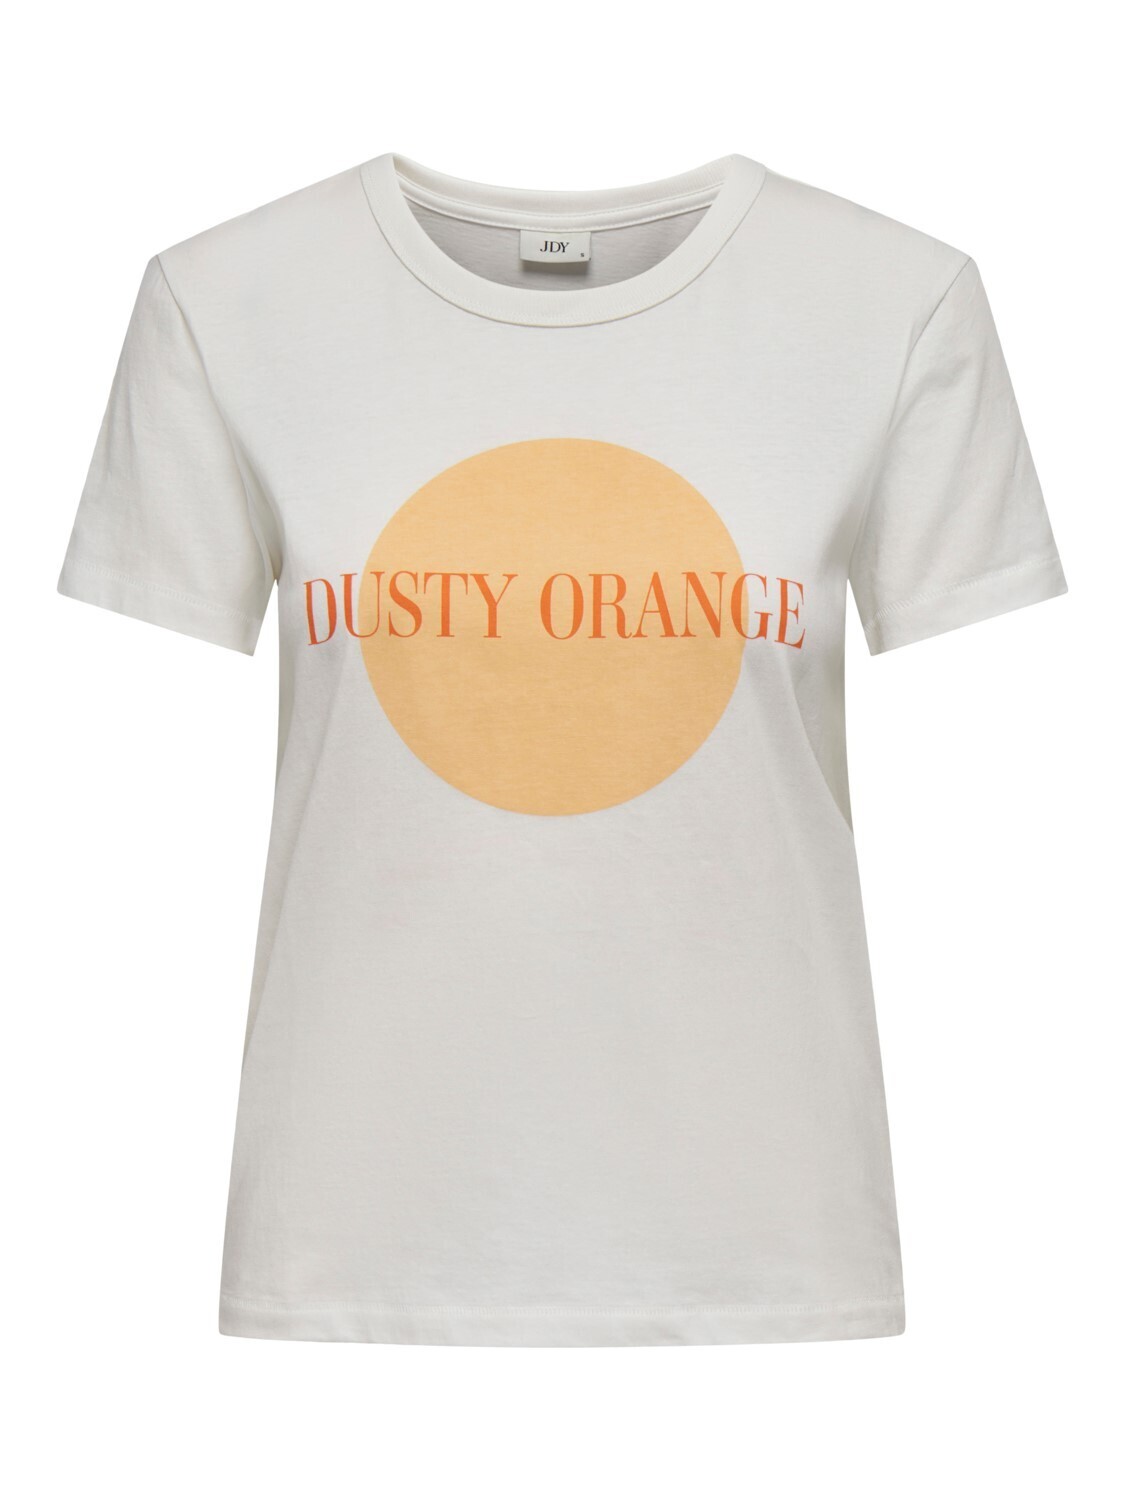 T-shirt - MICHIGAN - cloud dancer / dusty orange